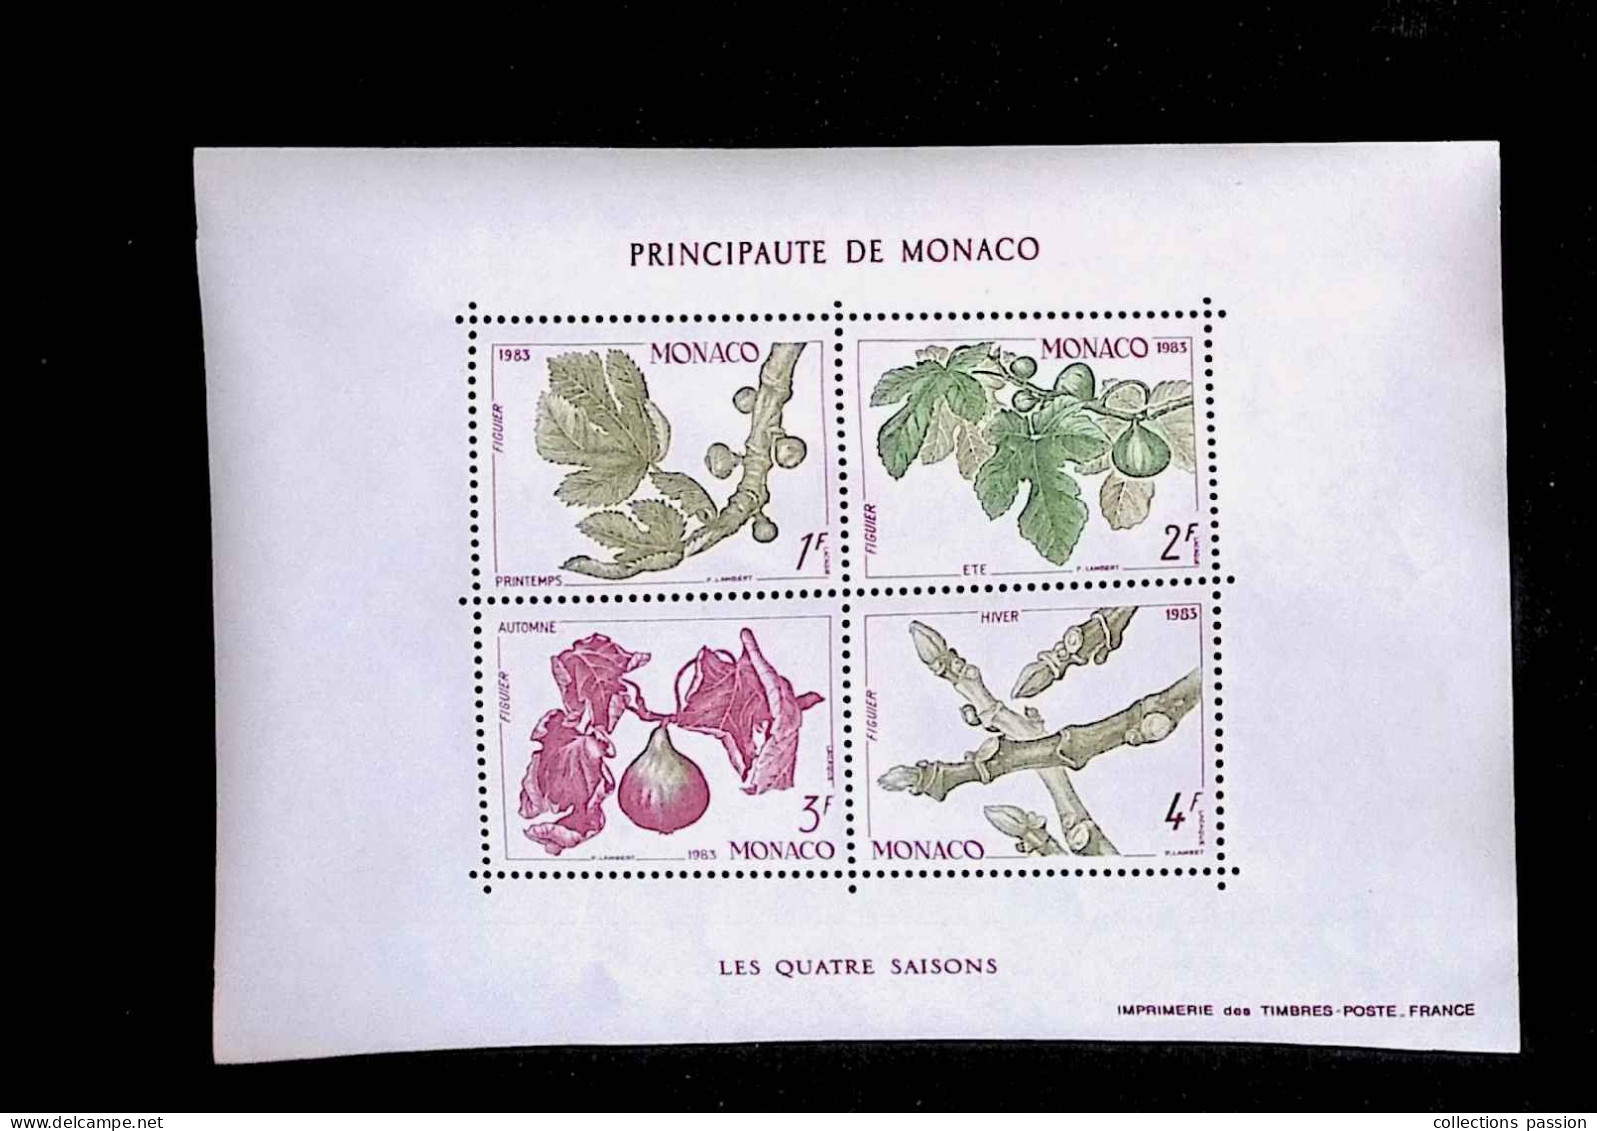 CL, Bloc De 4 Timbres, 1393-96, BF 26, Block, Principauté De Monaco, 1983, LES QUATRE SAISONS - Blokken